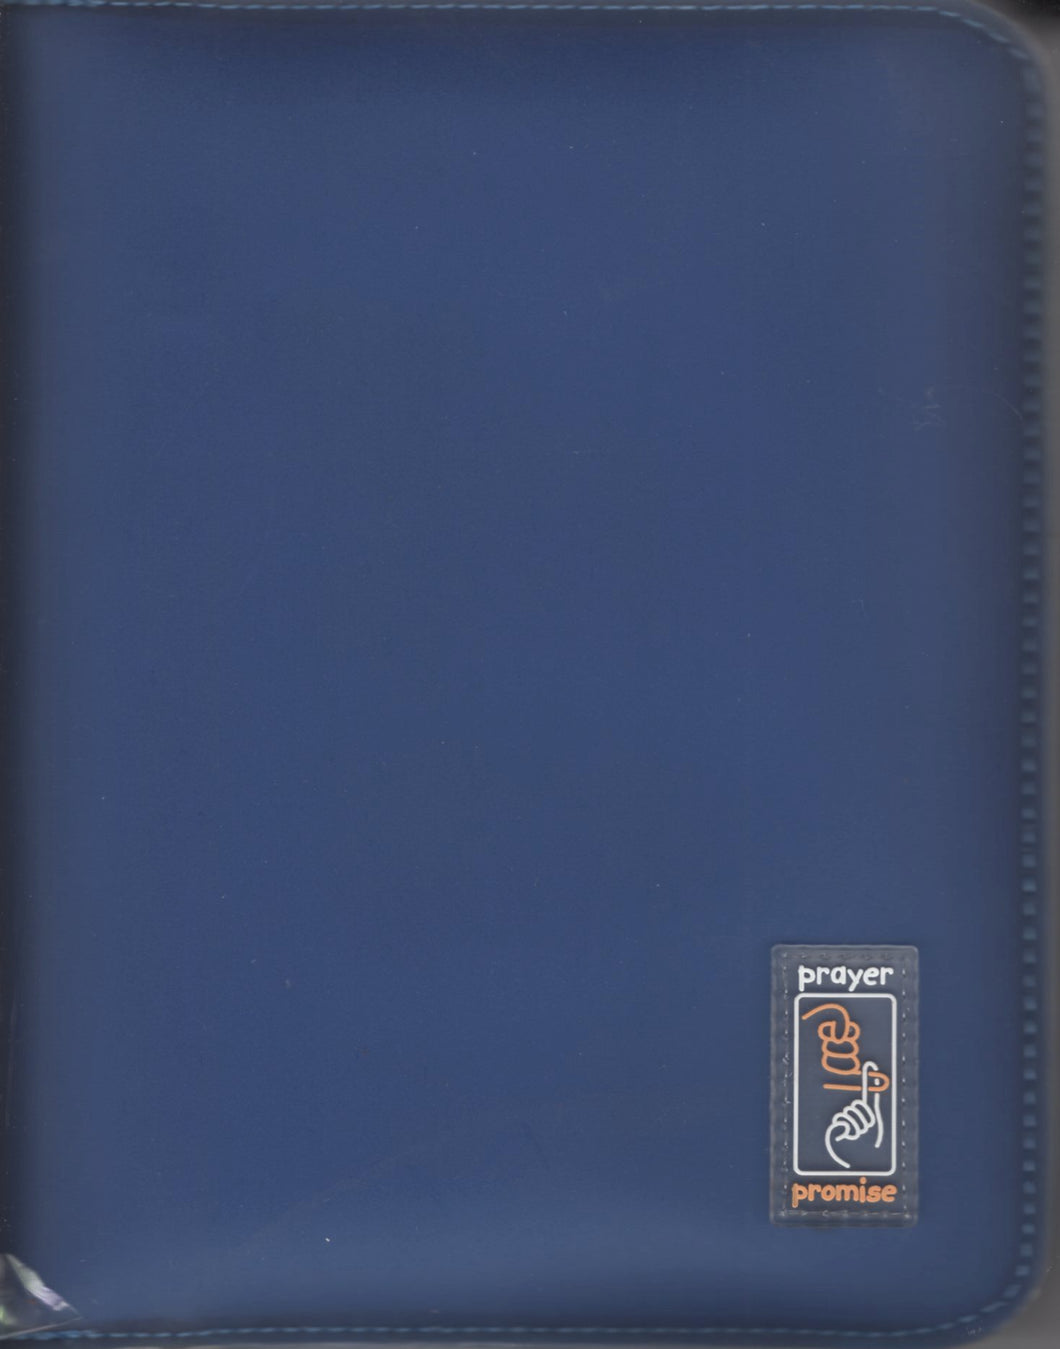 聖經-祈禱應許版(繁/輕便藍色袖珍軟膠拉鏈) #01A-064E